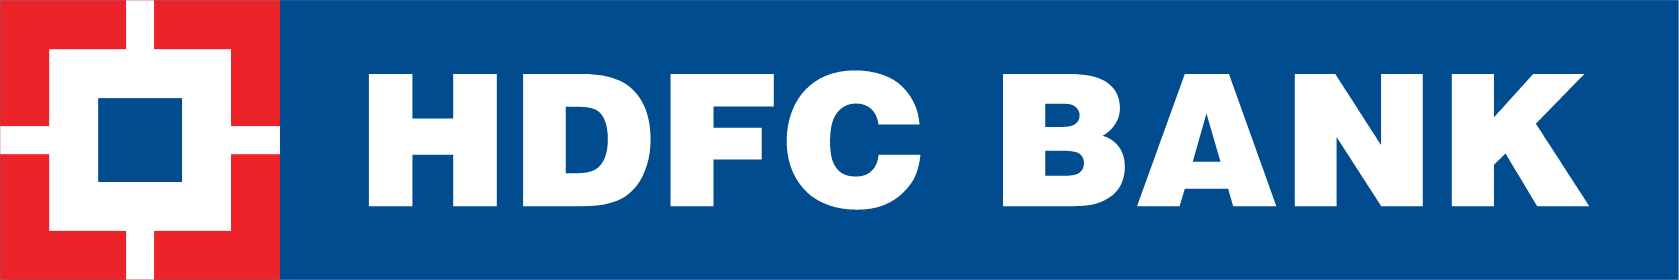 HDFC Bank logo large (transparent PNG)